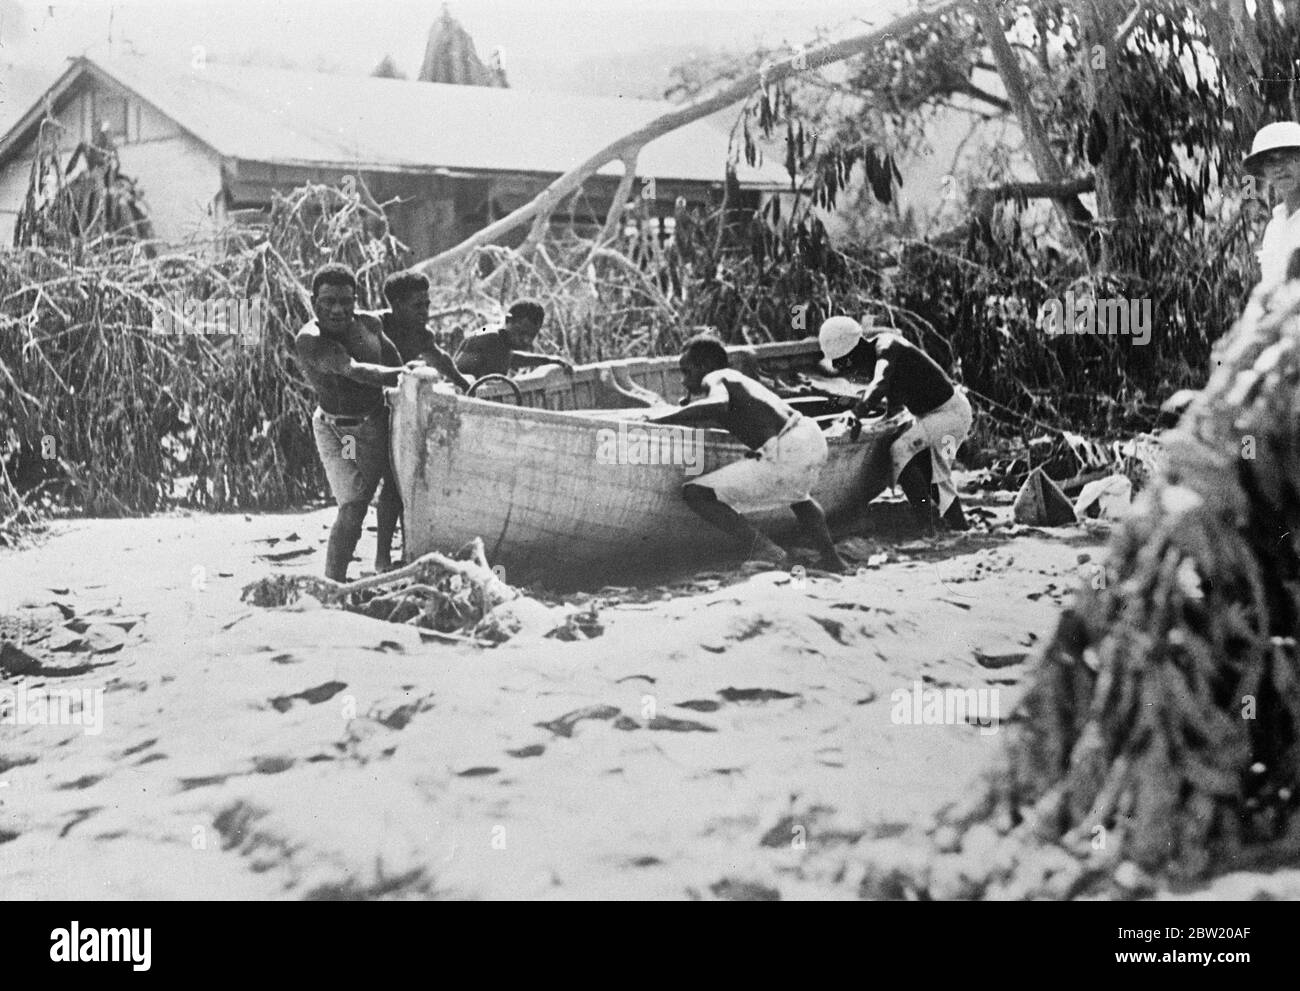 Erste Bilder von der Vulkankatastrophe auf der Insel Neuguinea. Drei Vulkane, zwei auf der Insel Vulcan und einer auf der Insel Matupi, brachen heftig unter Bimsstein und Schlamm auf den Dächern der Hauptstadt Rabaul der Insel Neubritanien in Neuguinea aus. Foto zeigt: Einheimische in Rabaul beim Abnehmen eines Bootes, das 300 Meter durch Flutwelle [Tsunami] an Land getragen wurde; gebrochene Bäume im Hintergrund. 18 Juni 1937 Stockfoto